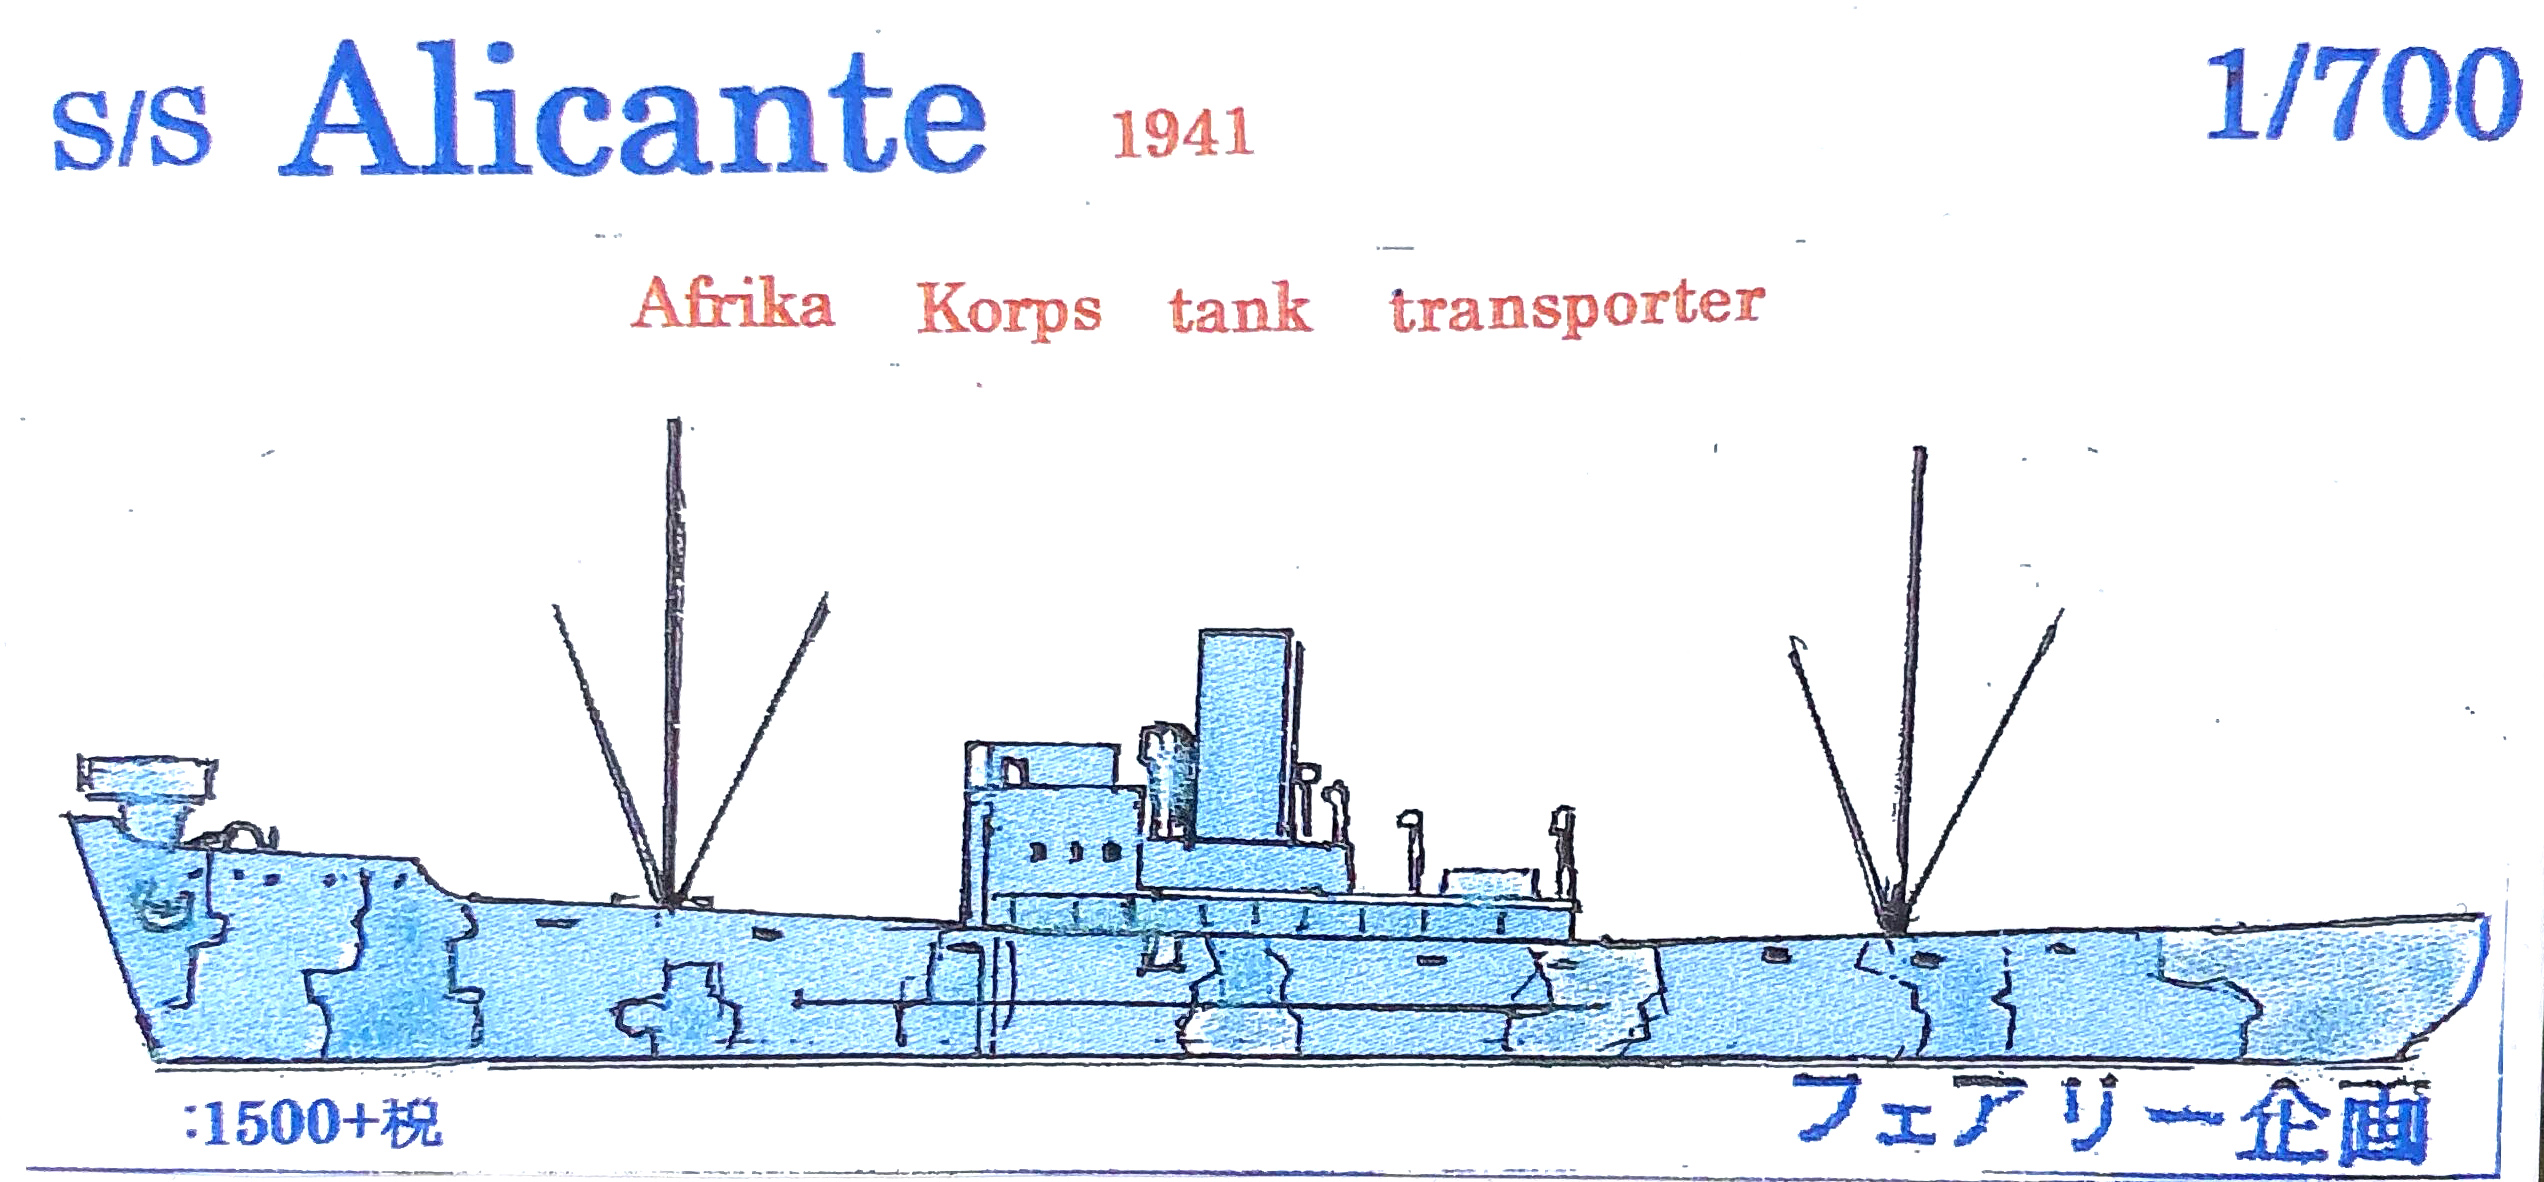 フェアリー企画 1/700 S/S アリカンテ 1941 アフリカ軍団戦車輸送艦 入荷しました。